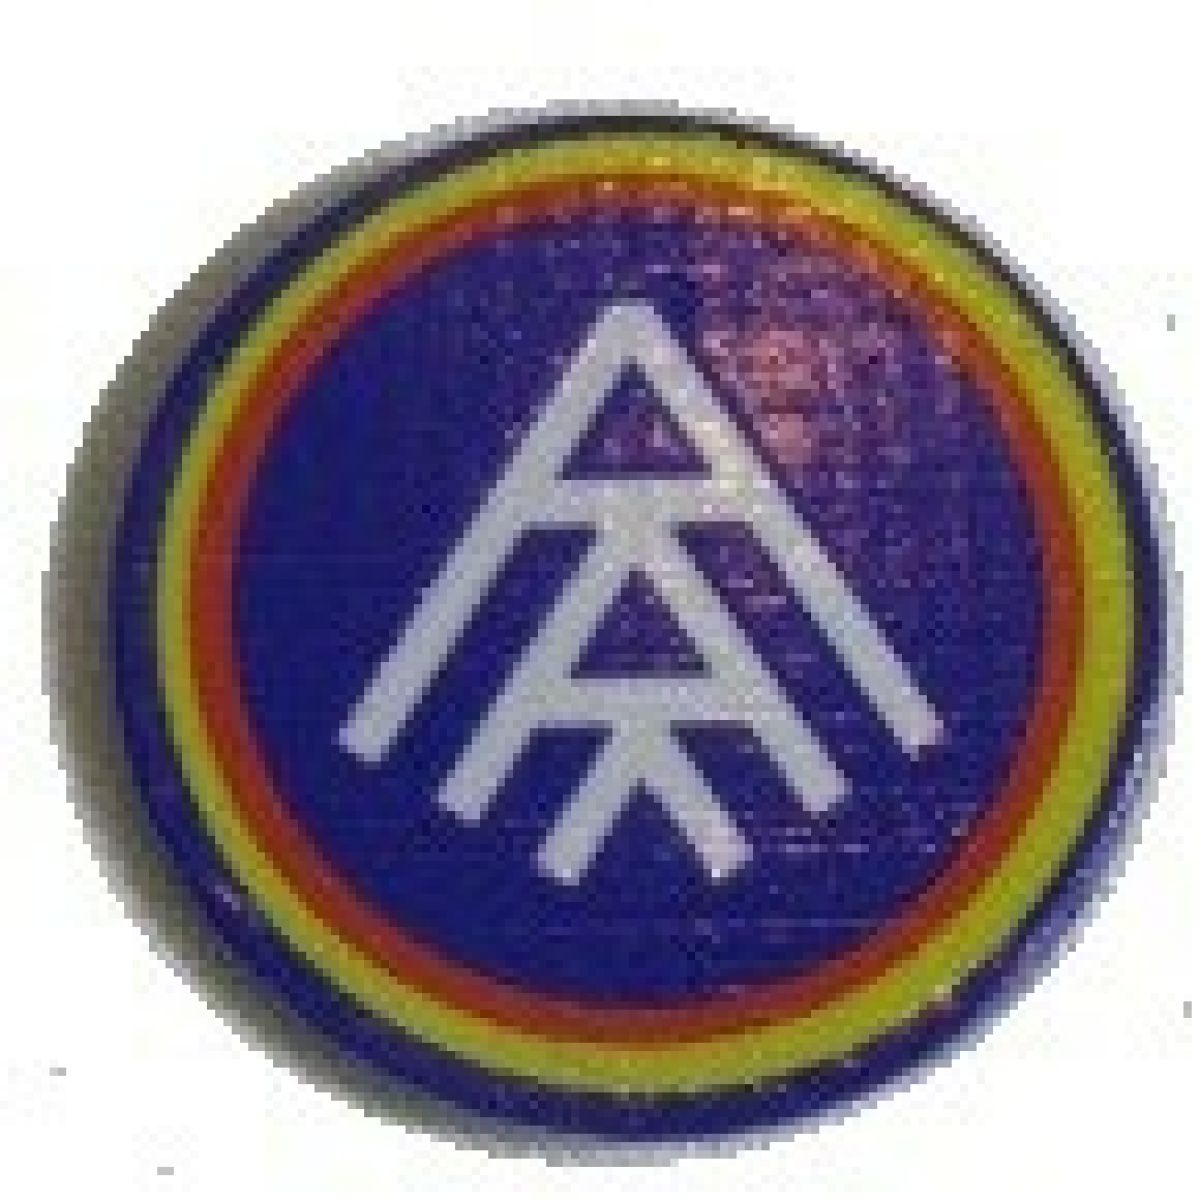 Pin-pins Futbol Club Andorra